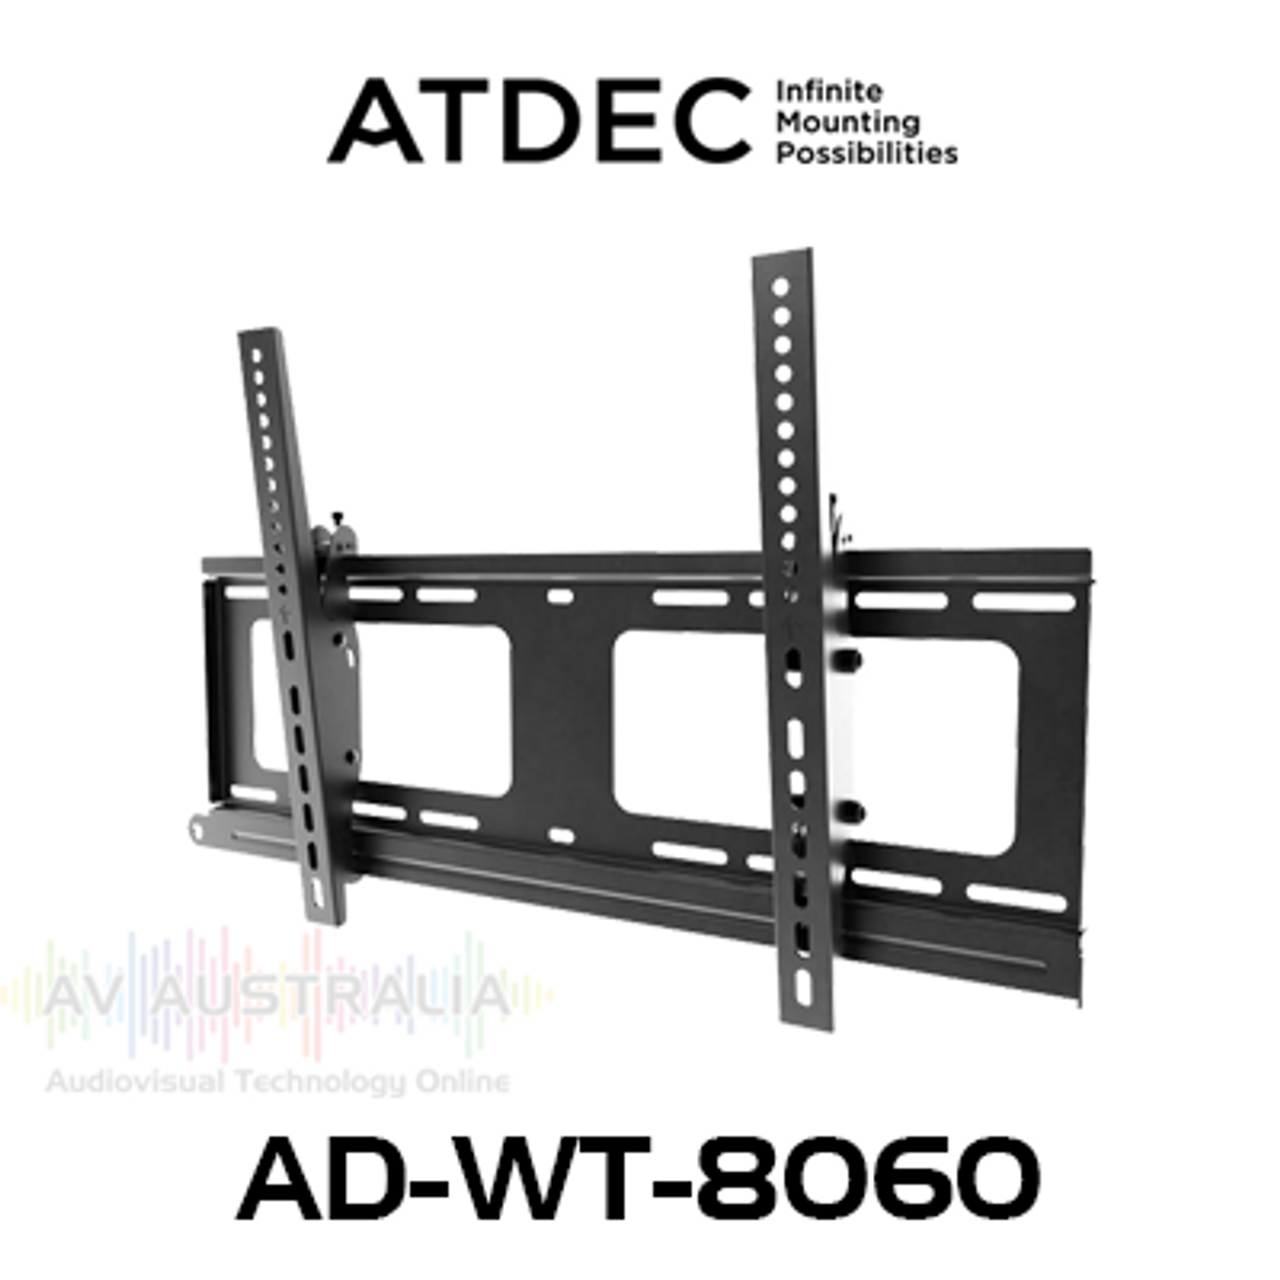 Atdec AD-WT-8060 VESA 600x400 Tilt Display Wall Mount (80kg Max)